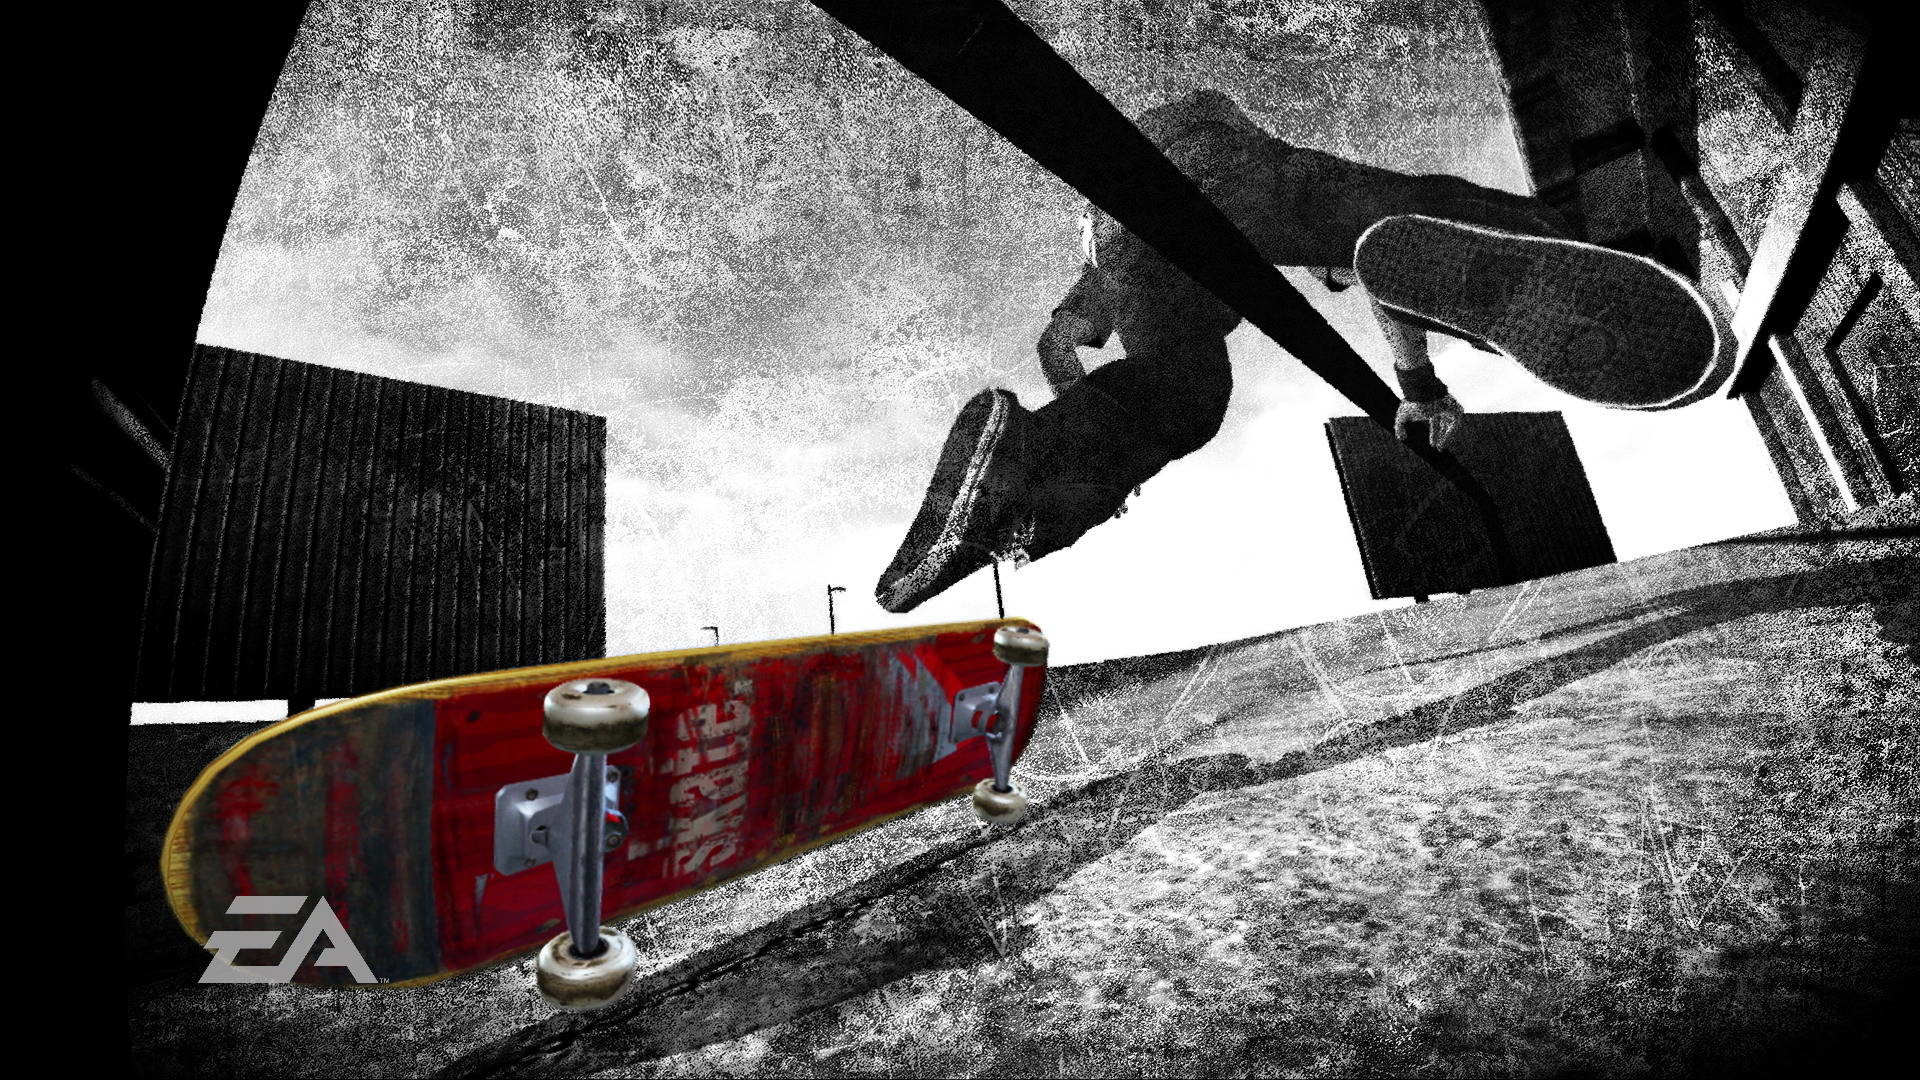 1920x1080 Skateboards backgrounds